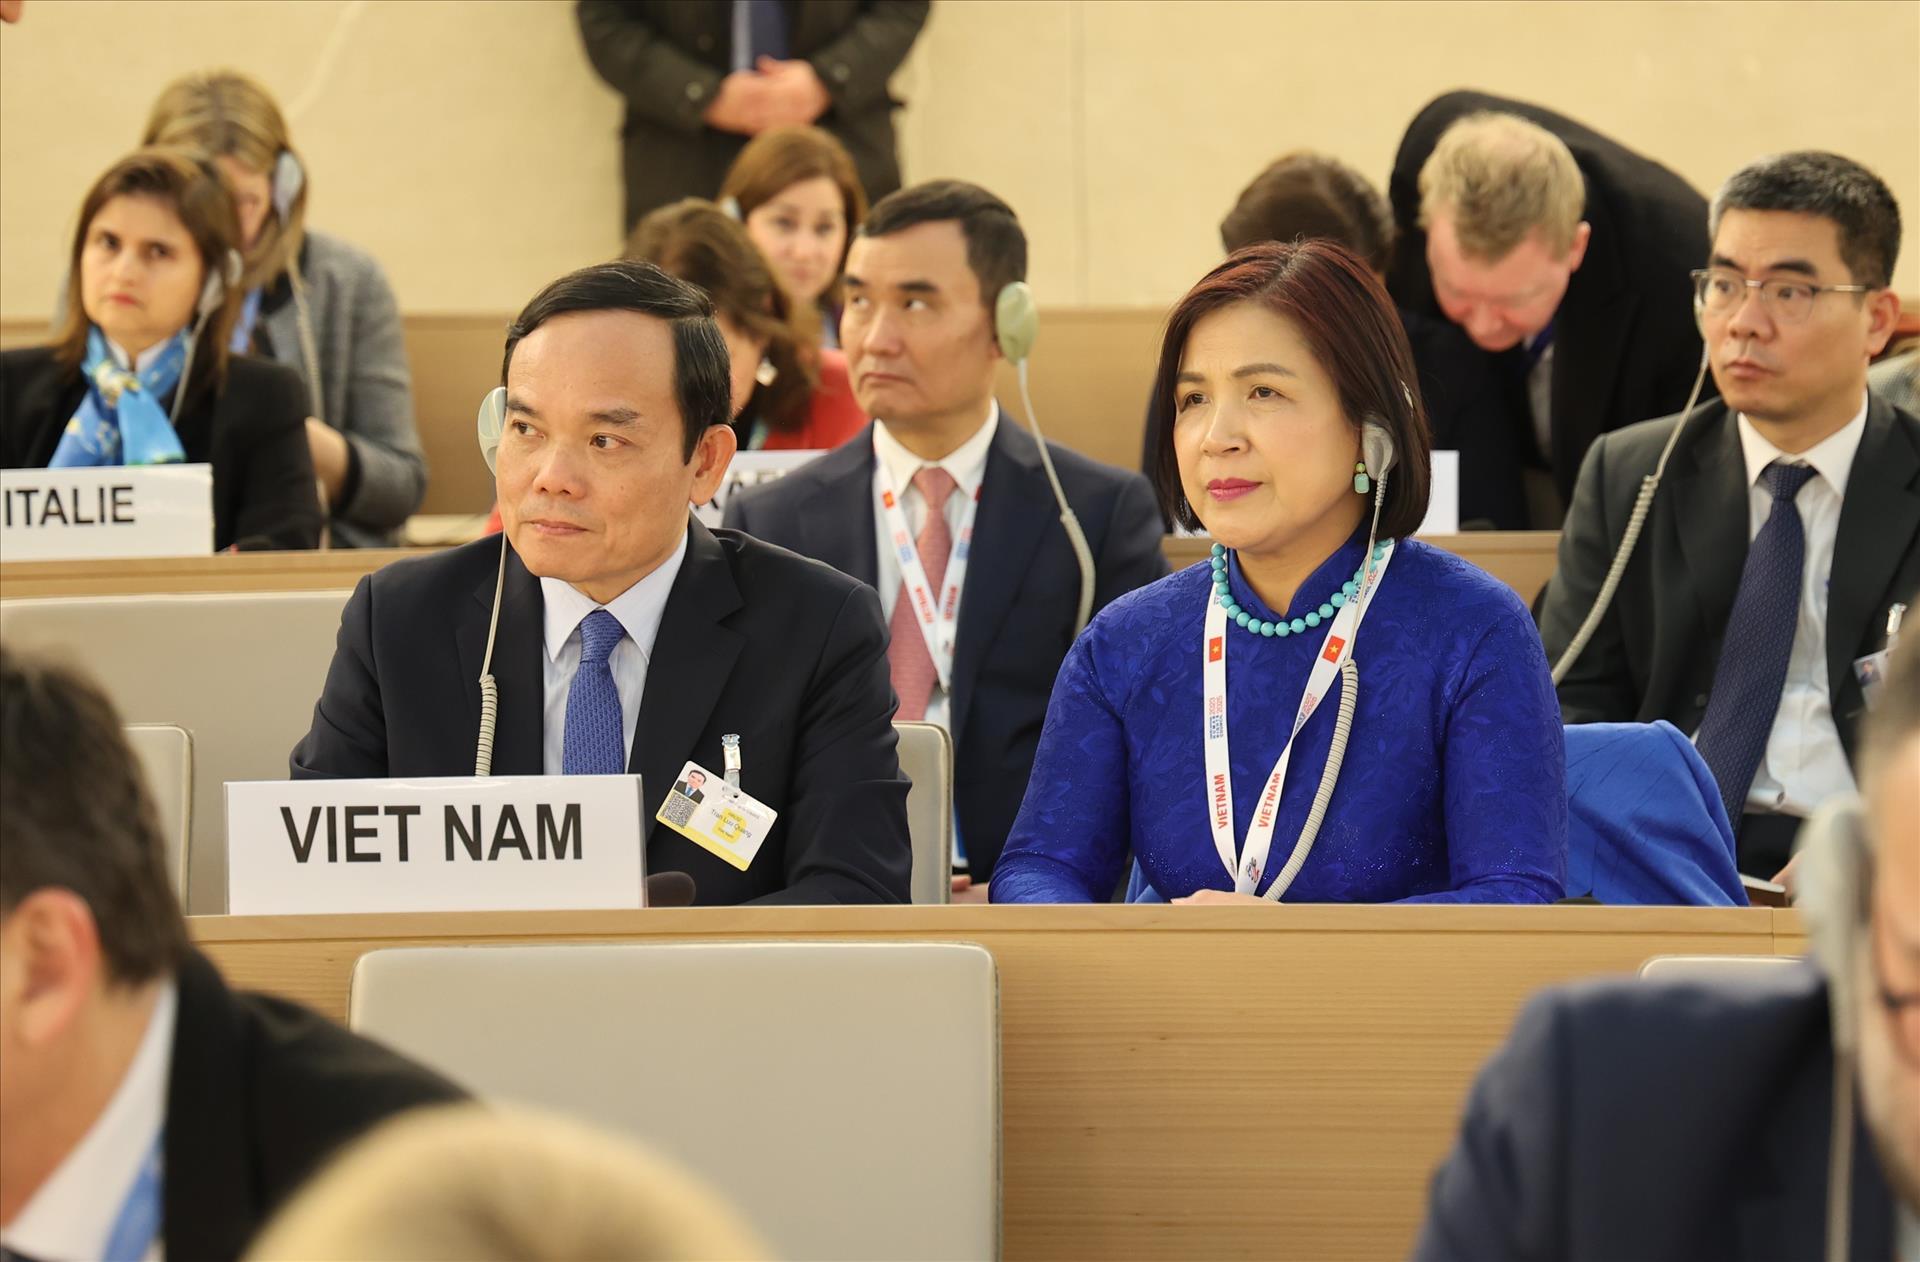 Phó Thủ tướng Trần Lưu Quang khẳng định phương châm của Việt Nam tham gia Hội đồng Nhân quyền là “Tôn trọng và hiểu biết. Đối thoại và hợp tác. Tất cả các quyền con người cho tất cả mọi người”.